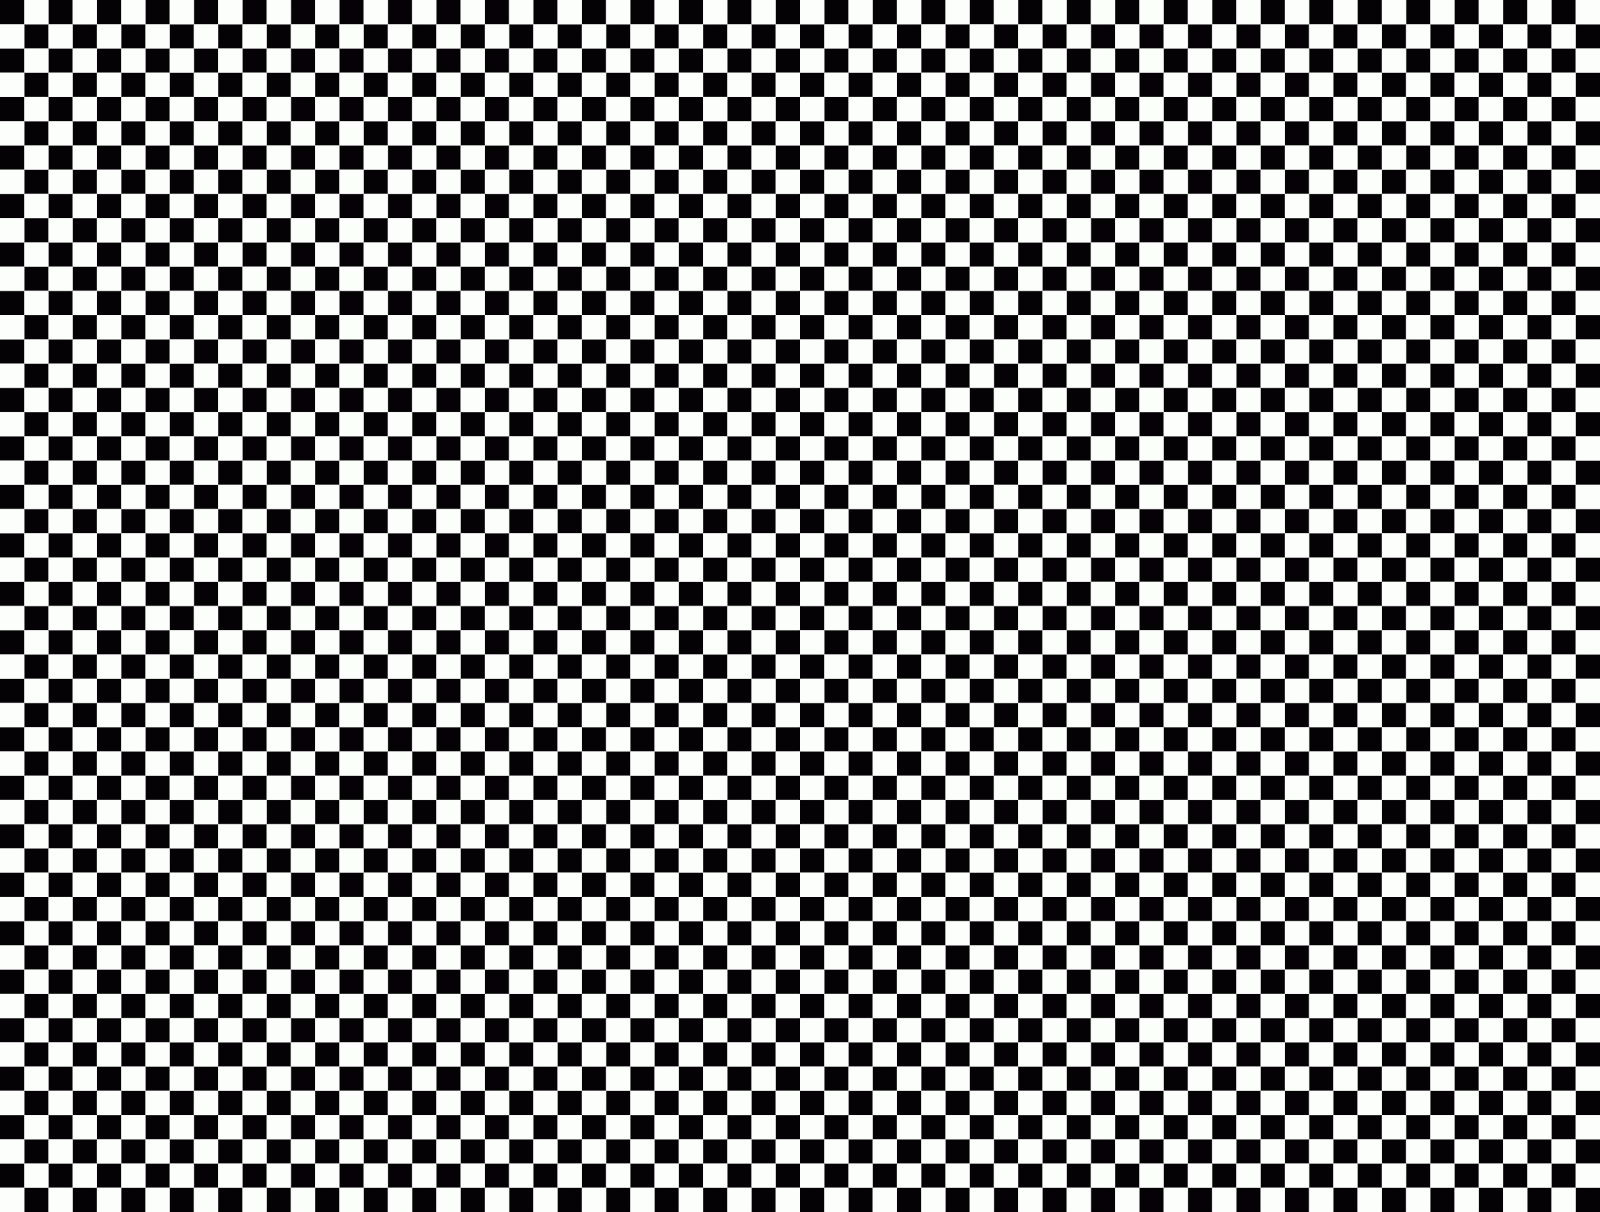 Checkered Wallpaper Checkered Wallpaper HD Wallpapers Download Free Map Images Wallpaper [wallpaper684.blogspot.com]